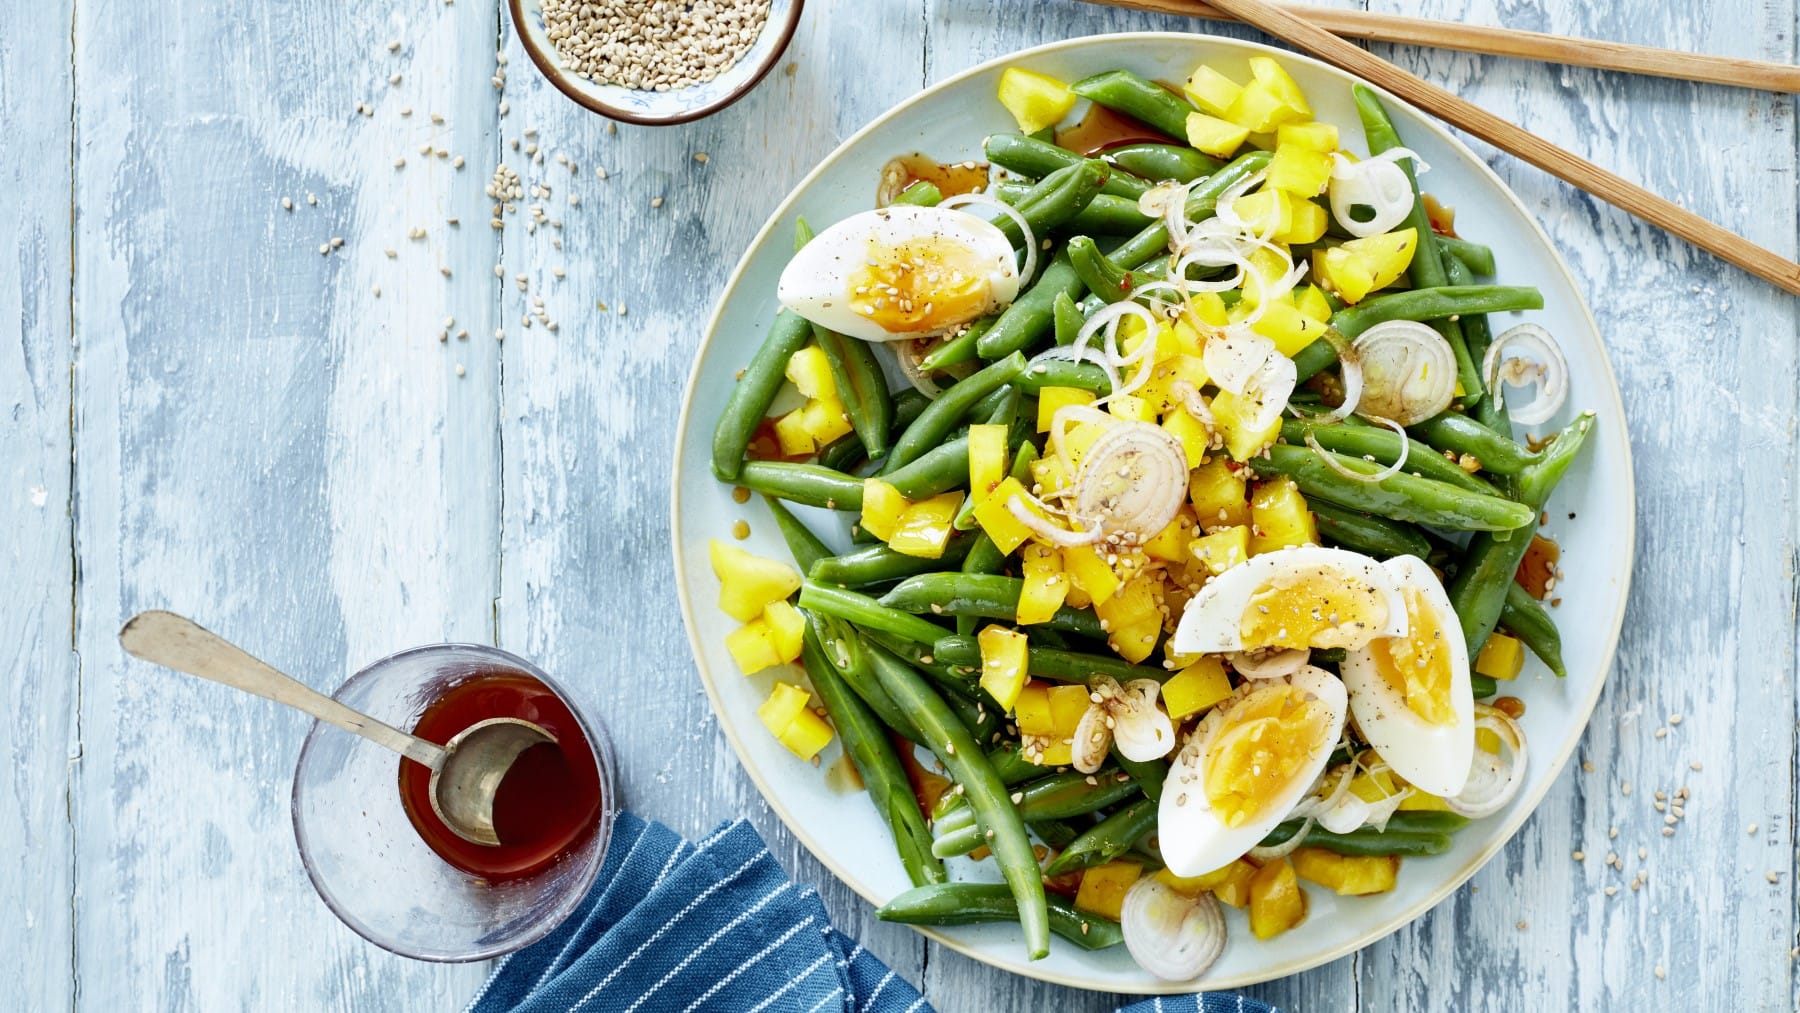 Draufsicht: Bohnensalat mit Ei und Mango auf einem Teller, daneben ein Glas mit Sojasauce unr Sesamkörner auf blauem Holzuntergrund.